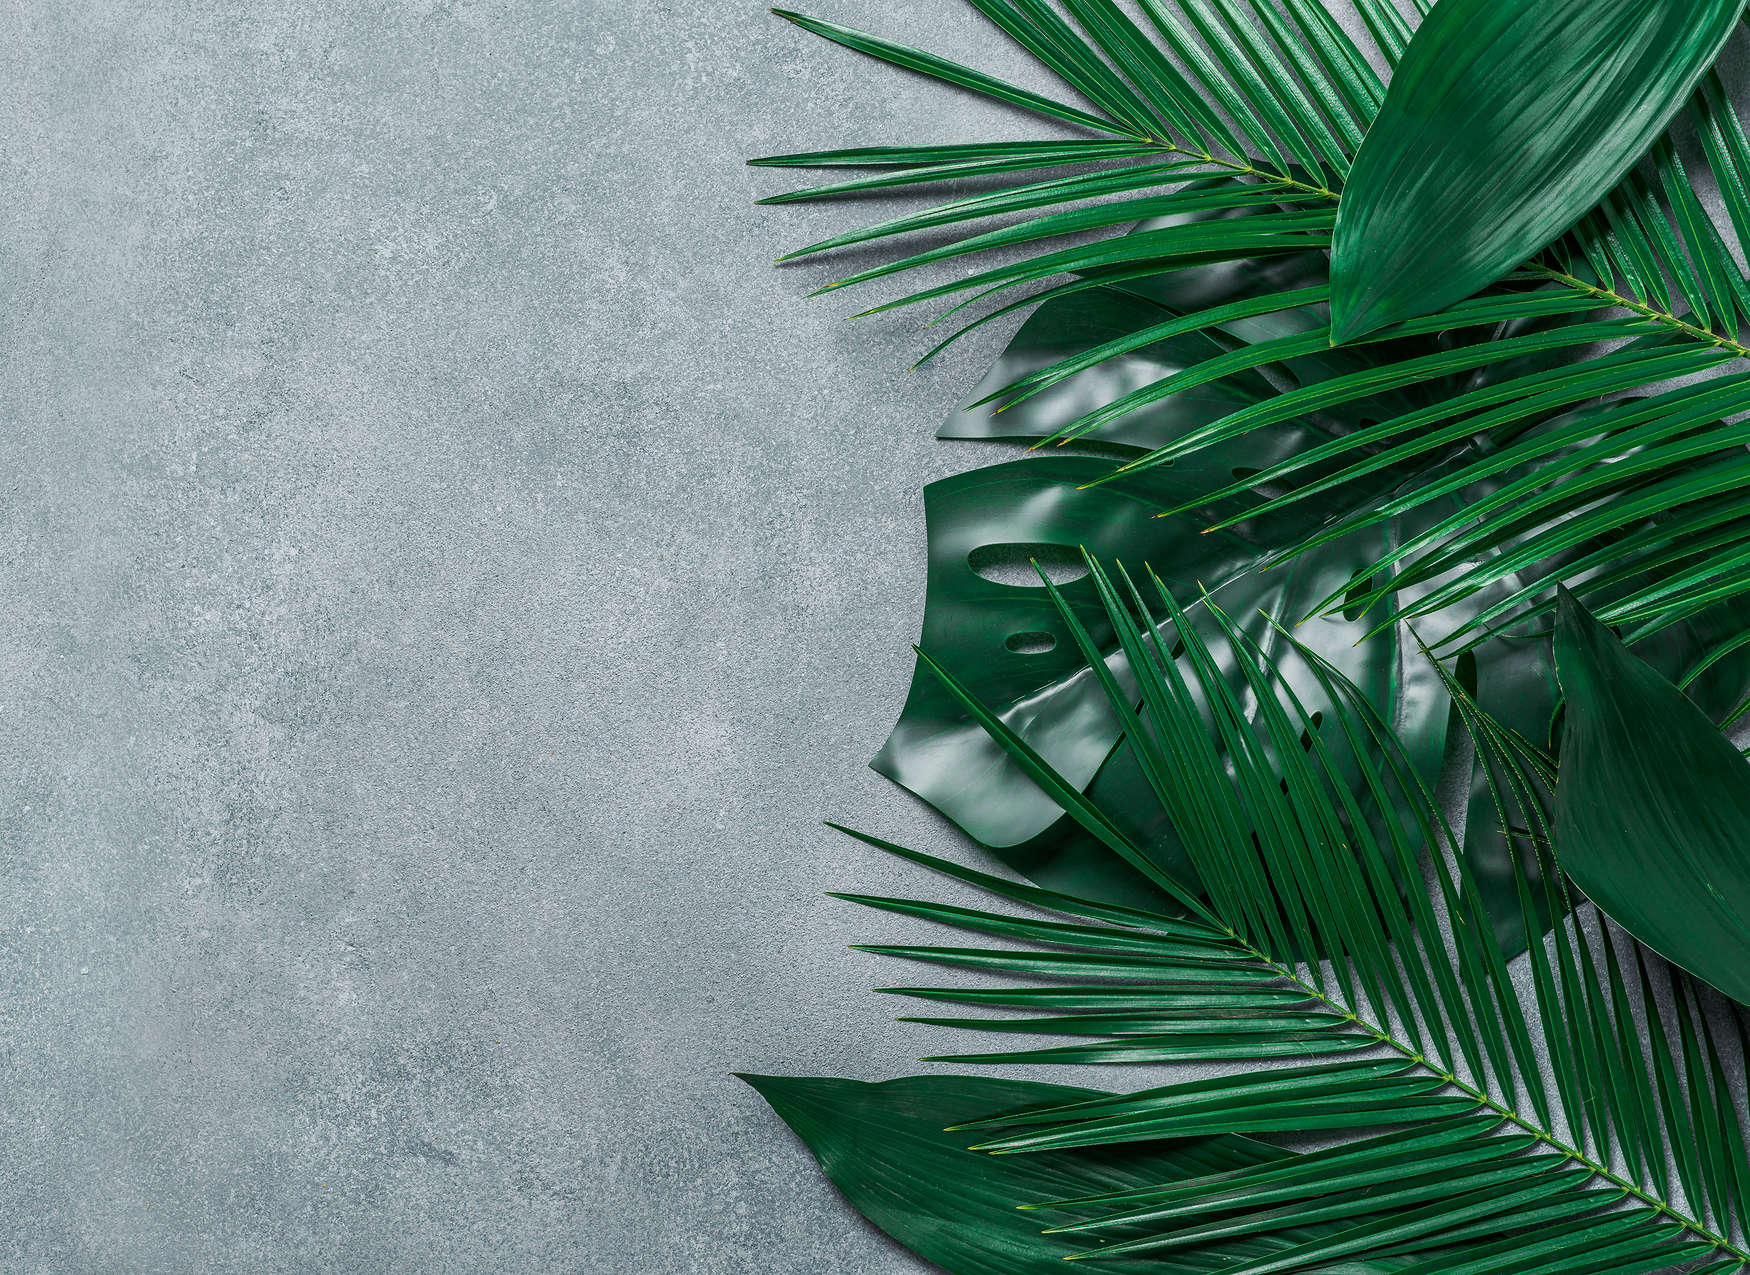             Digital behang tropische bladeren op betonnen achtergrond - Groen, Grijs
        